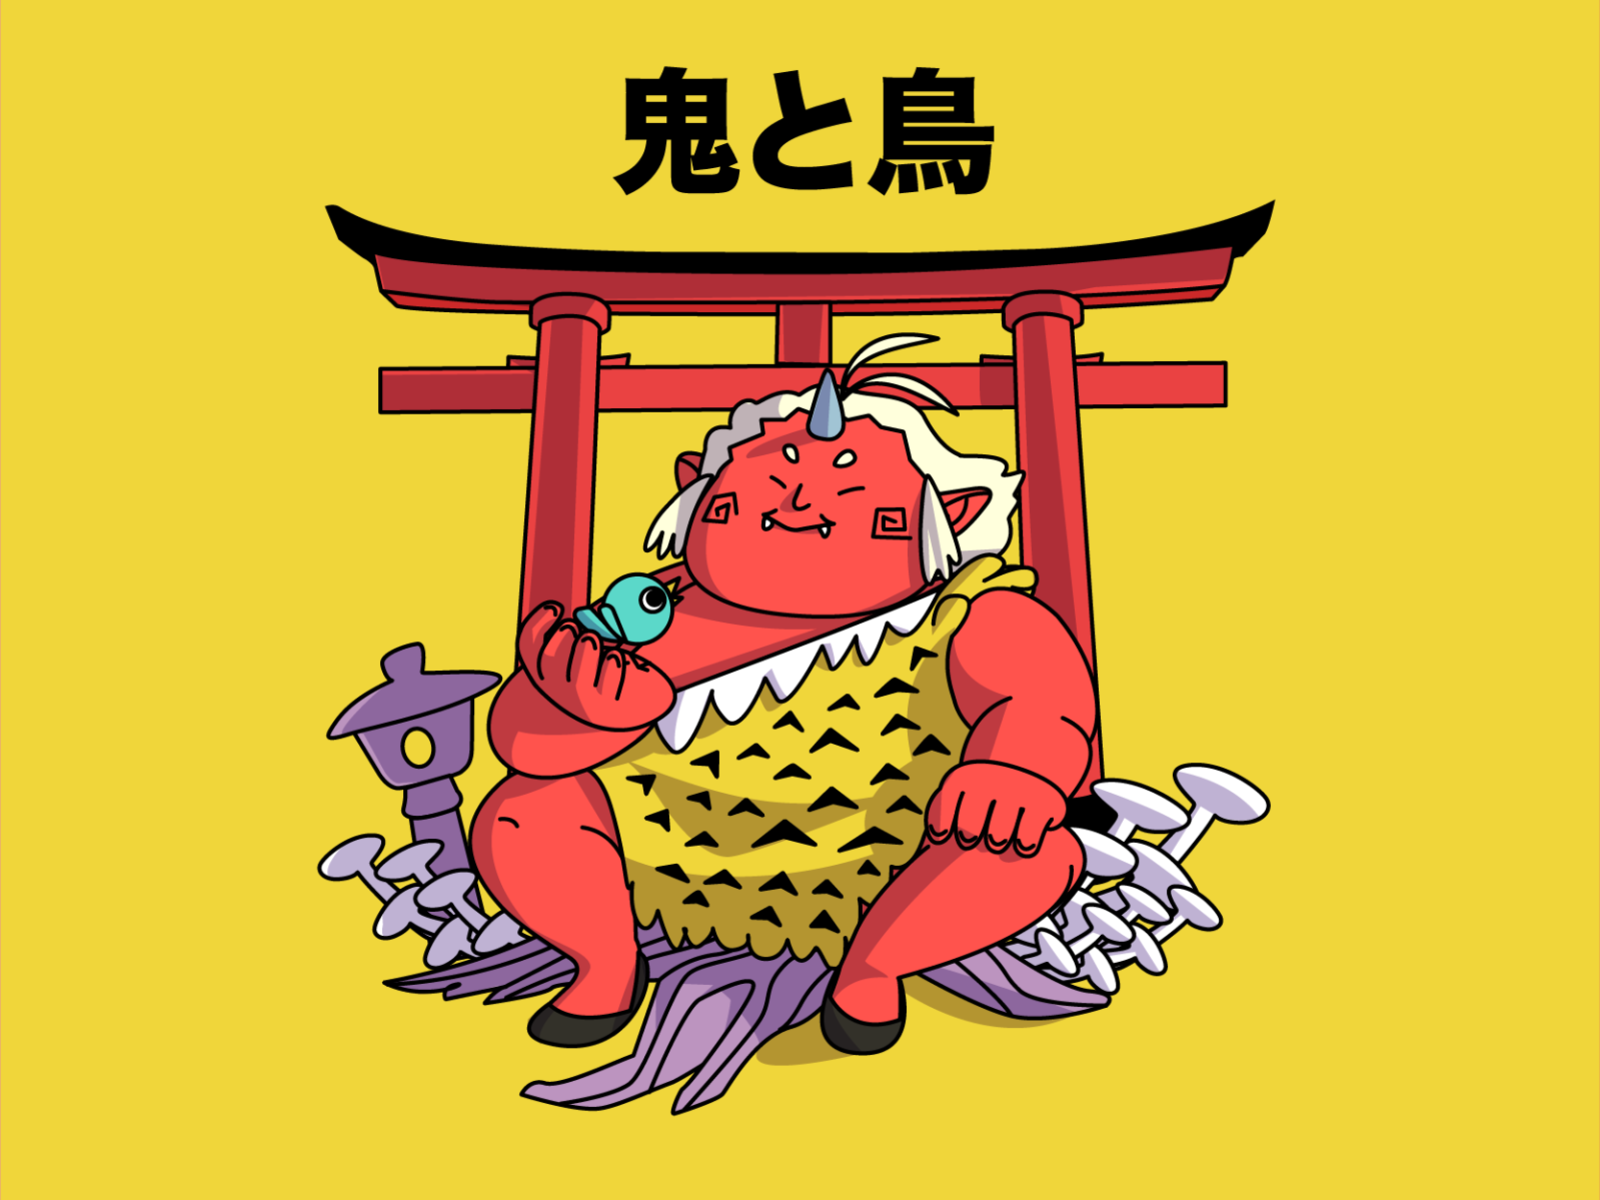 鬼と鳥 artwork bird character character design chubby demon devil illustration japanese oni torii vector